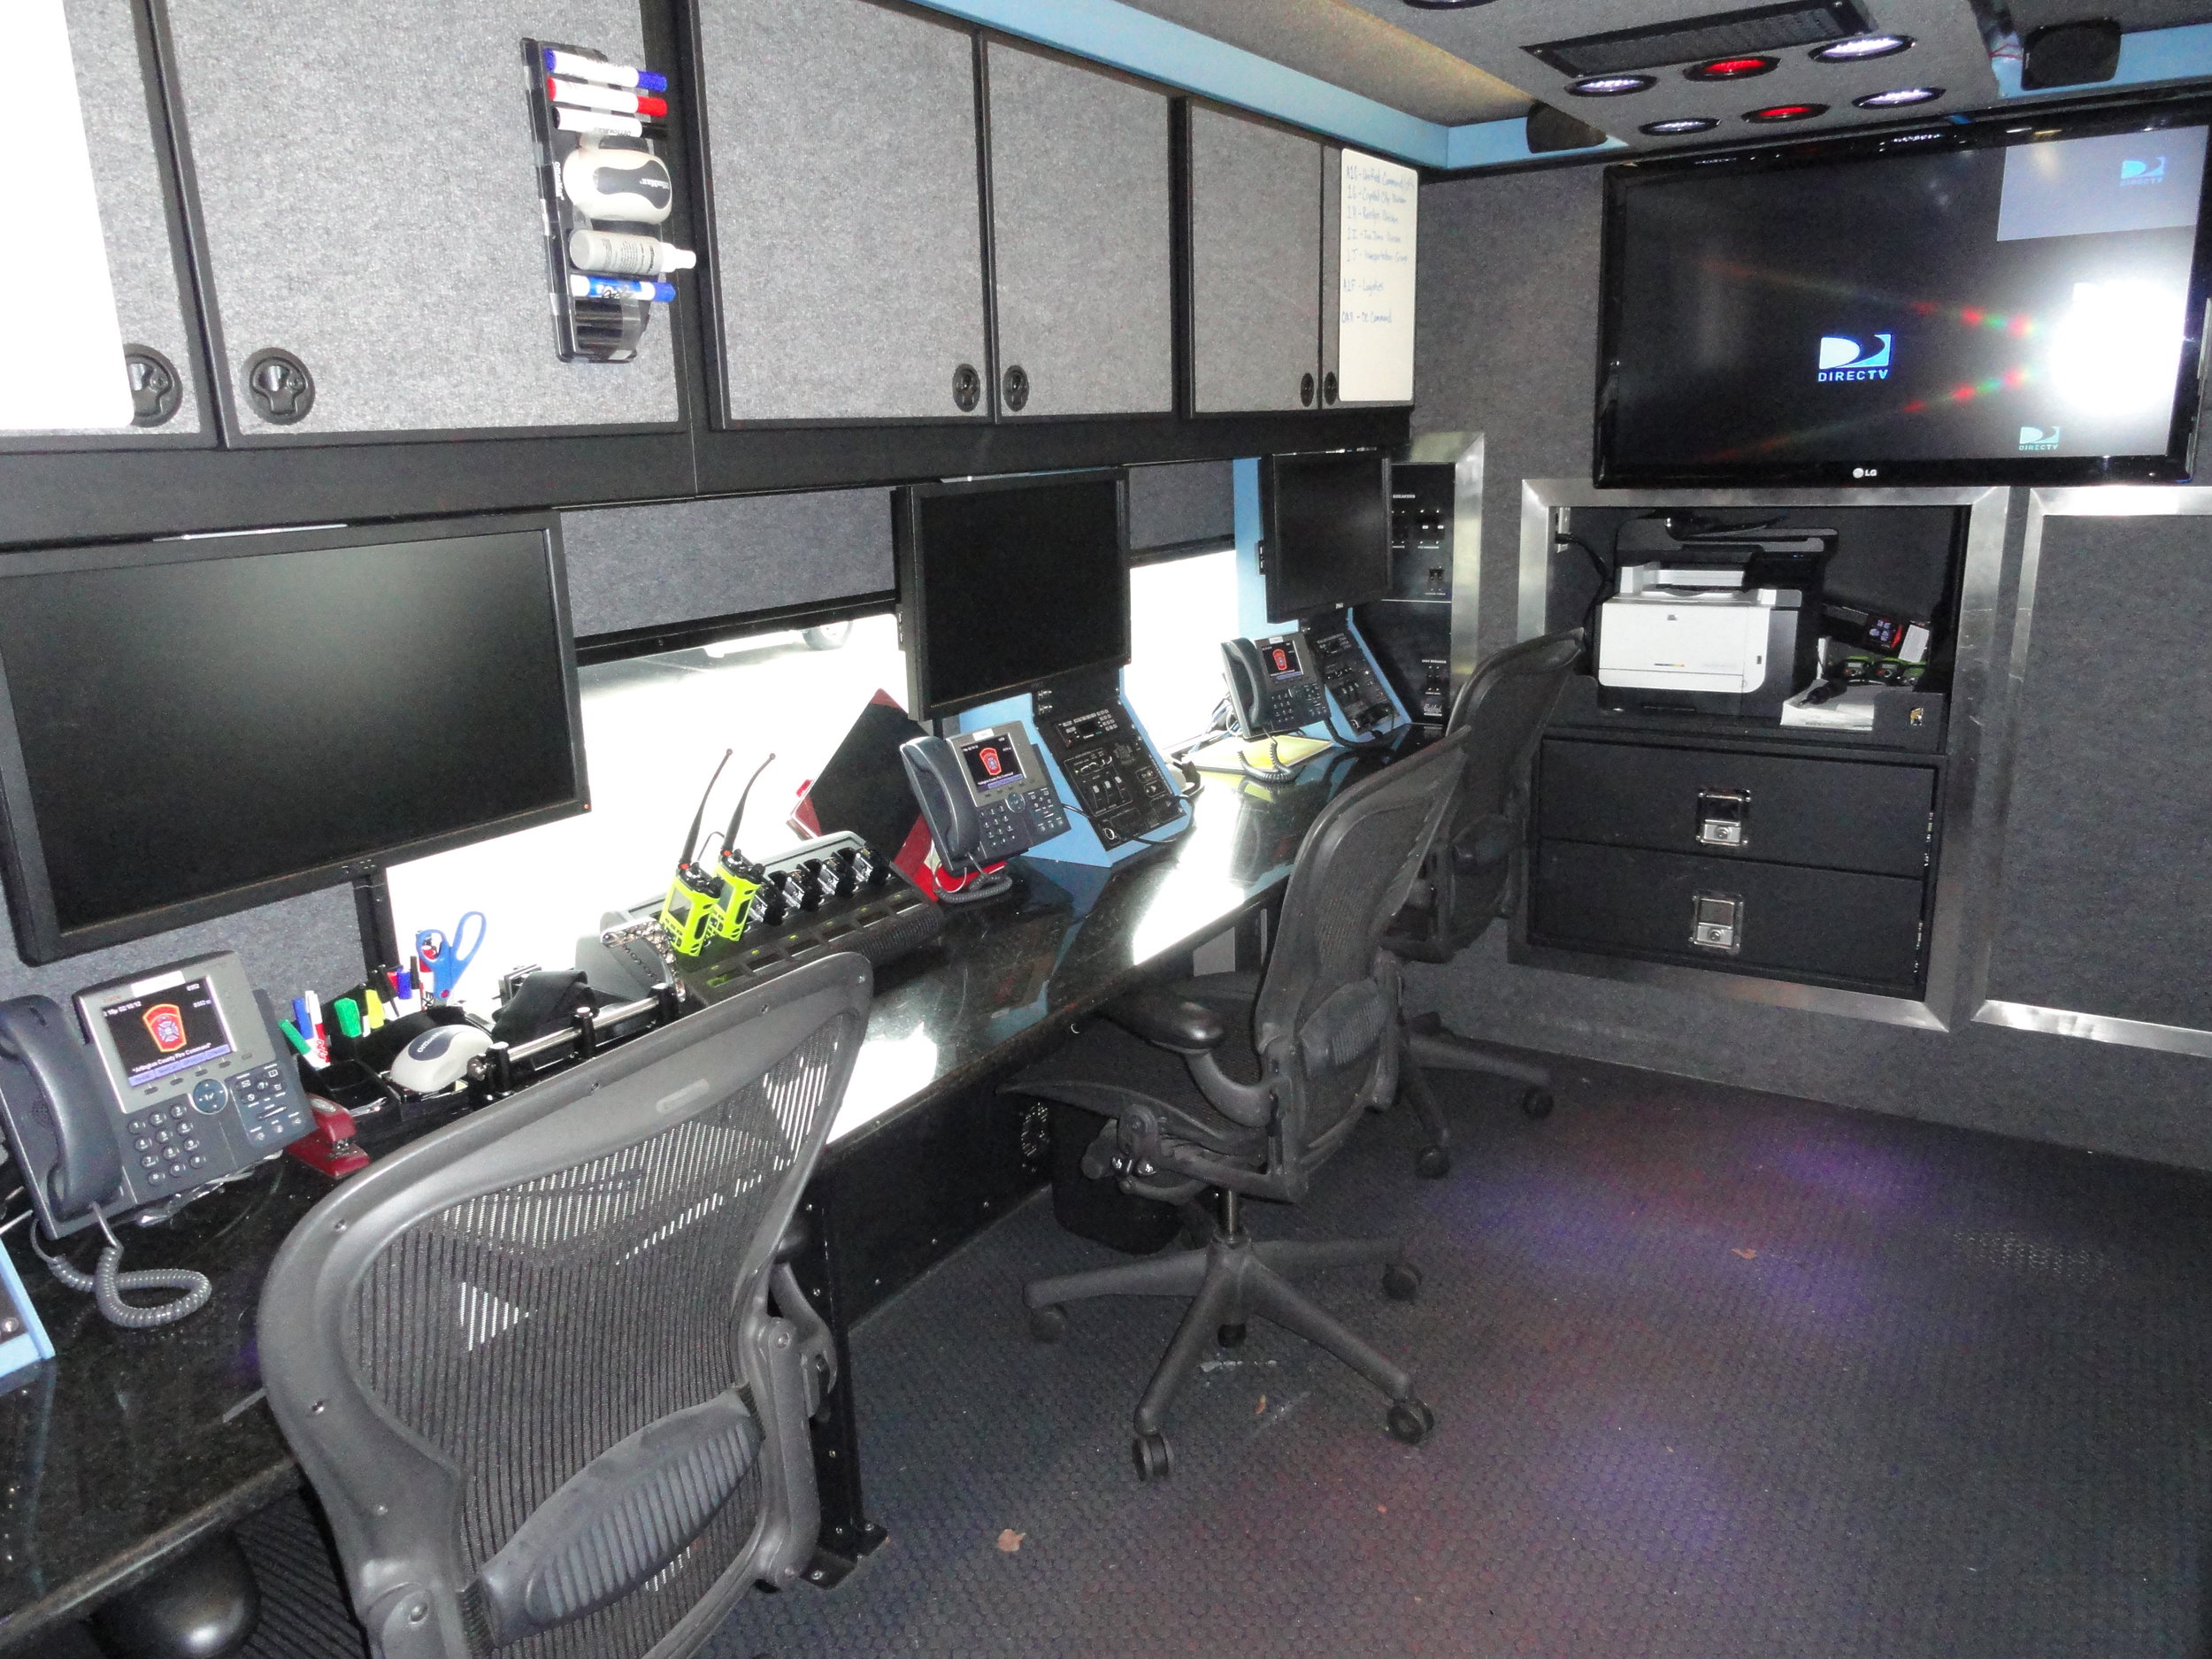 22 CVS - Arlington Fire Mobile Command AV Upgrade pic #3.JPG